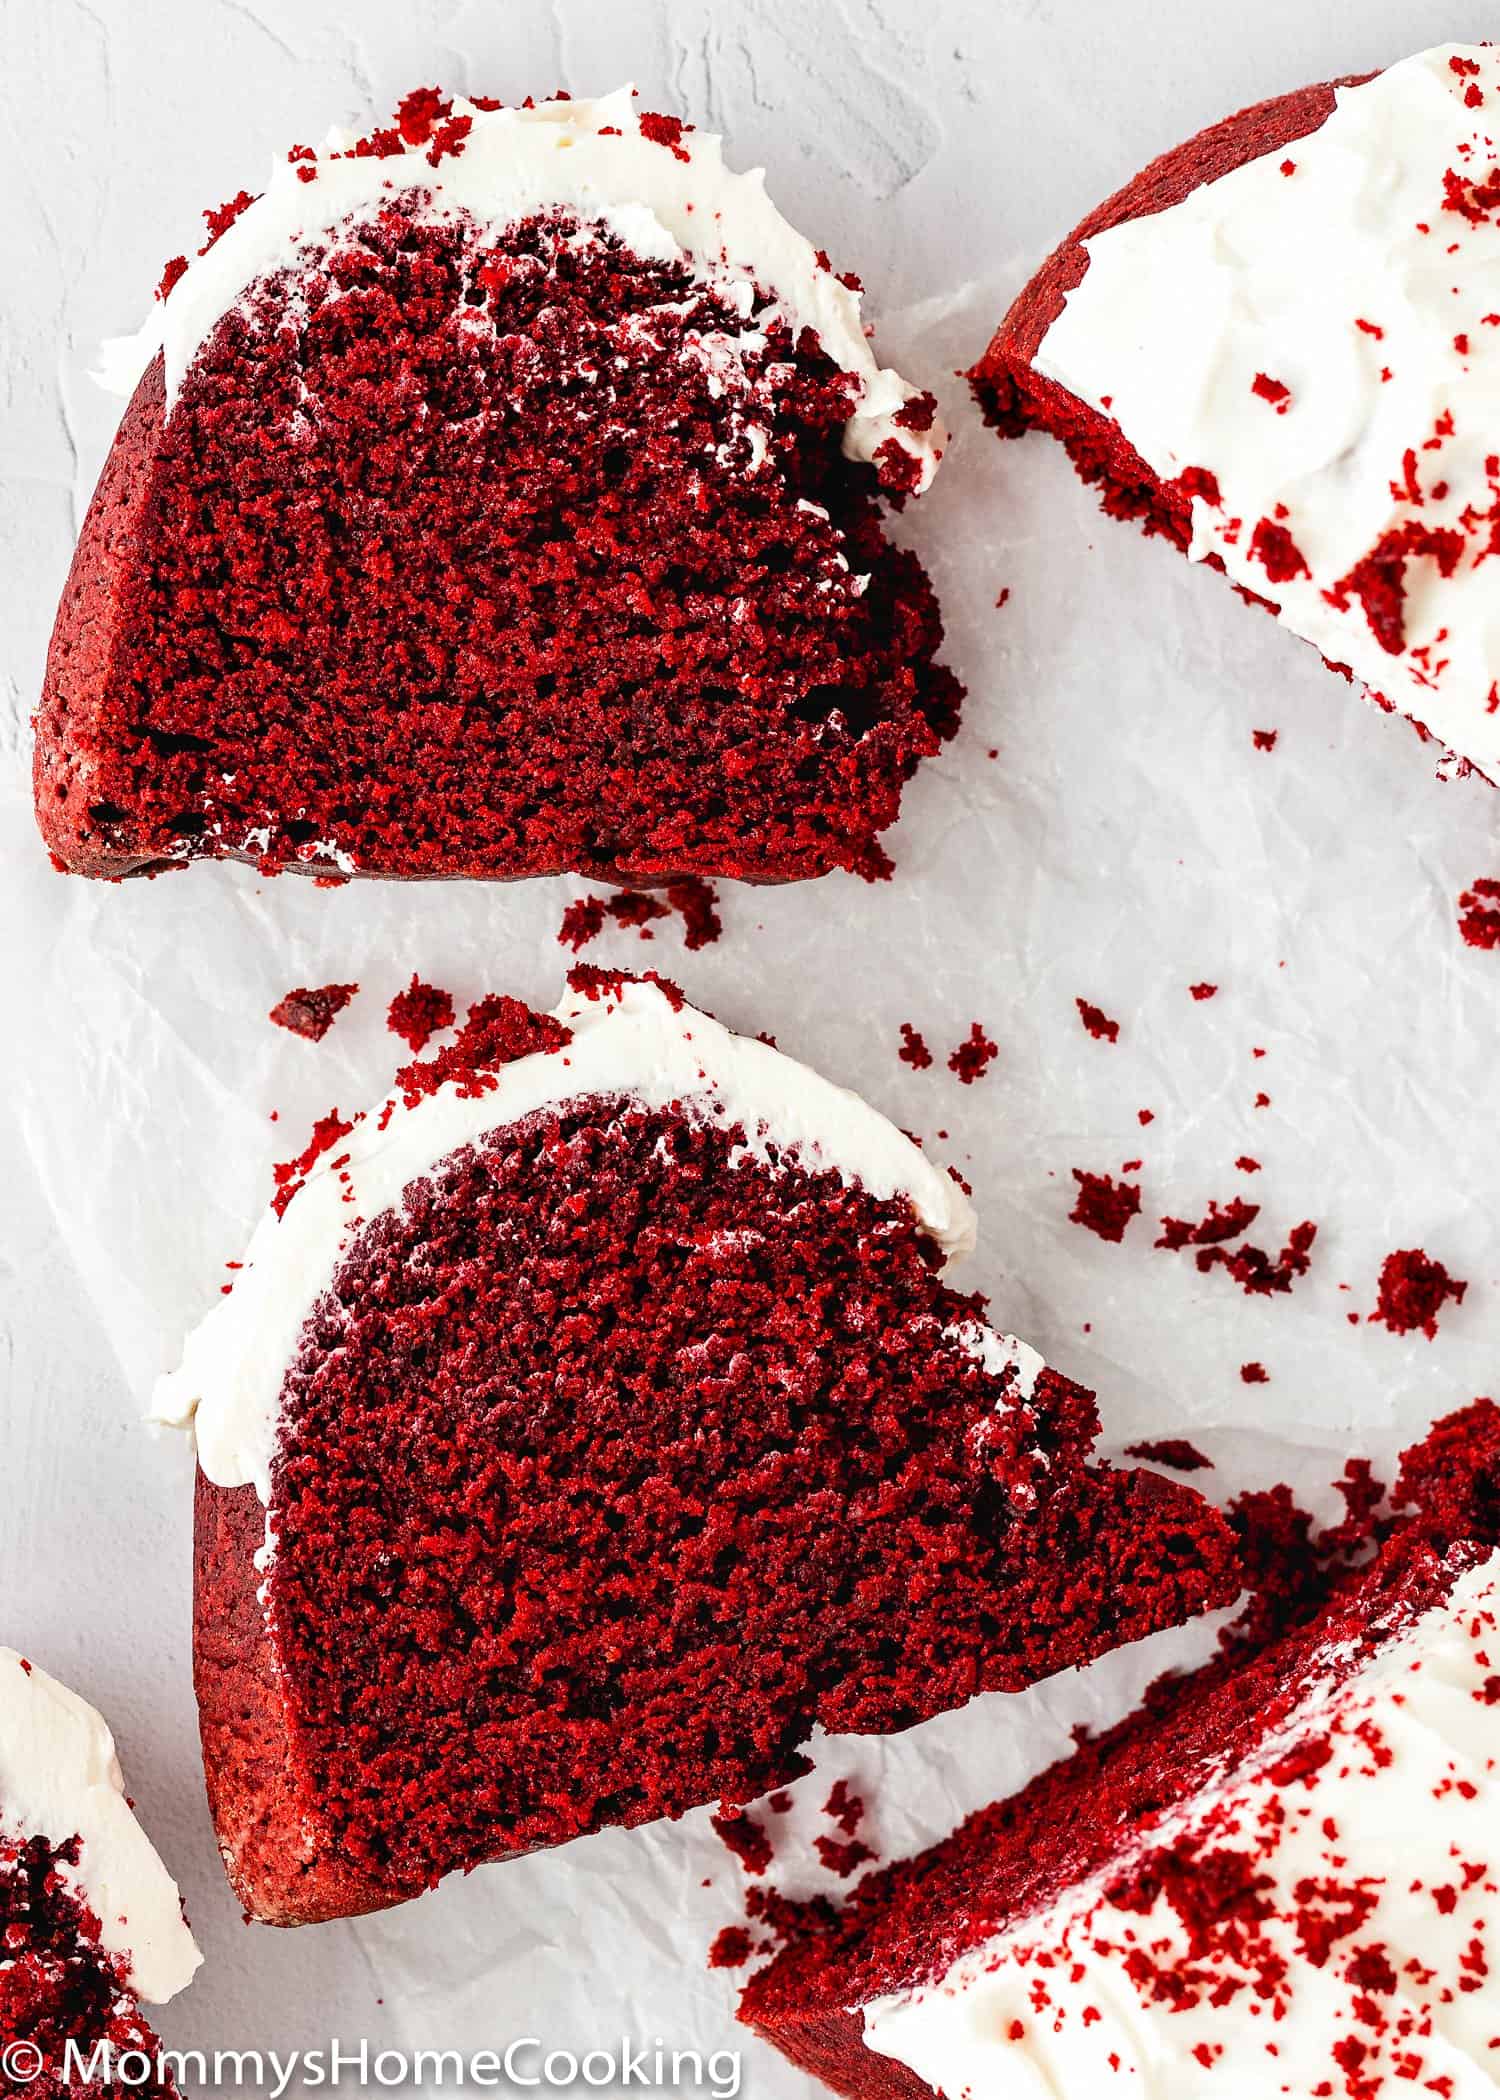 two slices of Eggless Red Velvet Bundt Cake showing inside fluffy texture